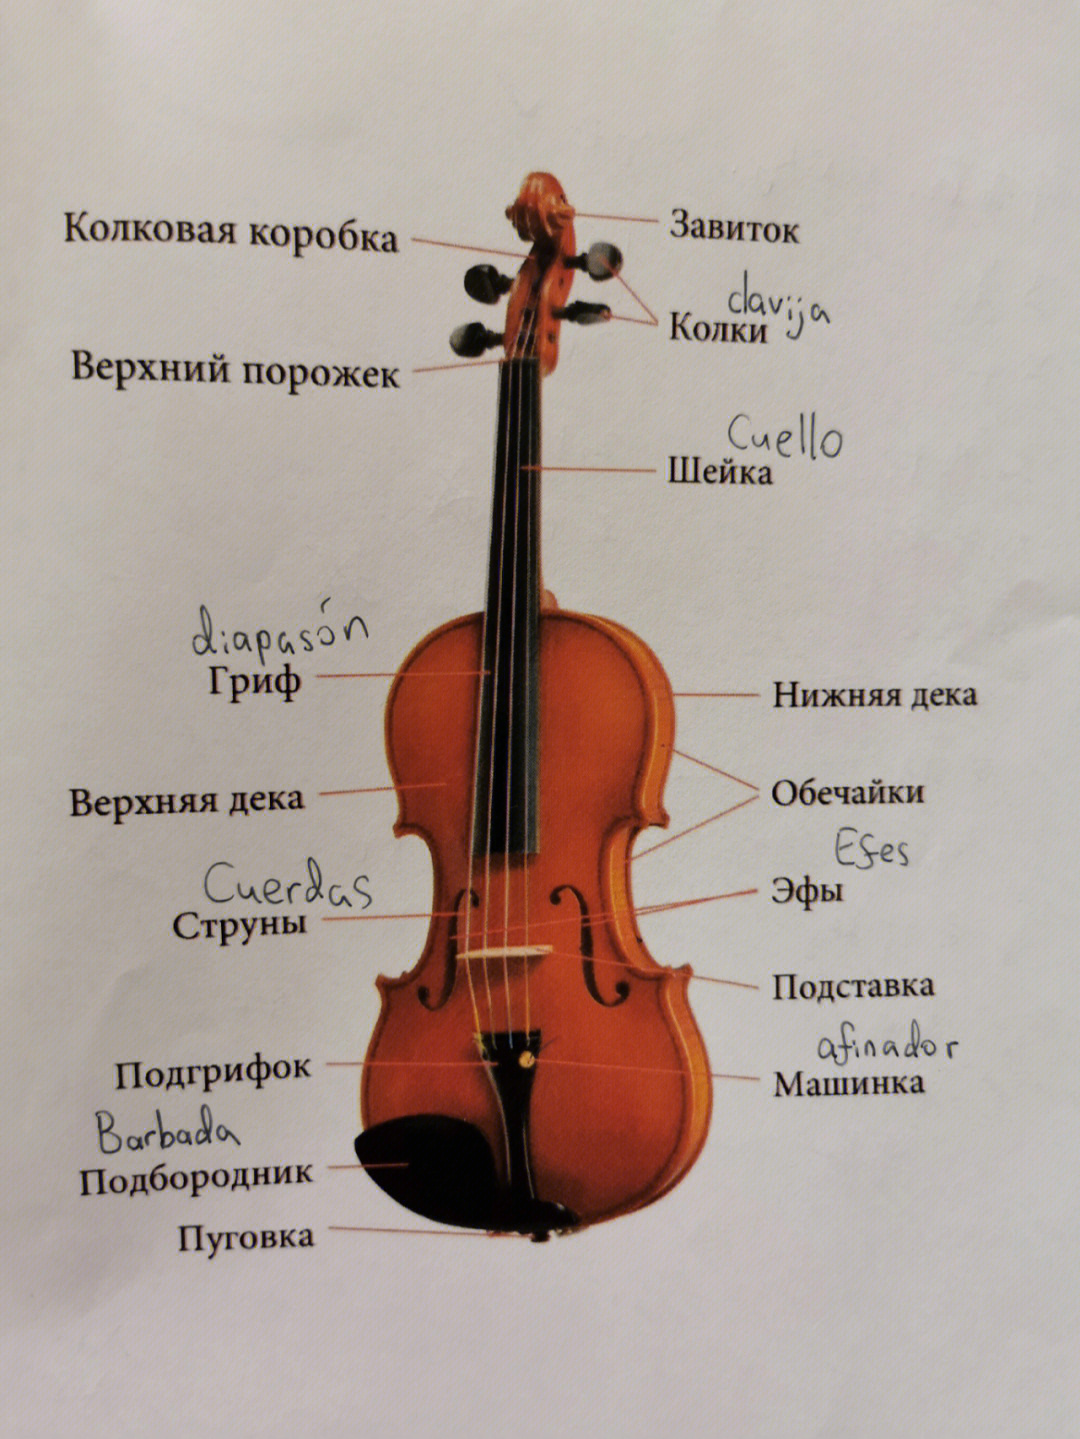 俄语中文乐理及小提琴相关词汇对照表